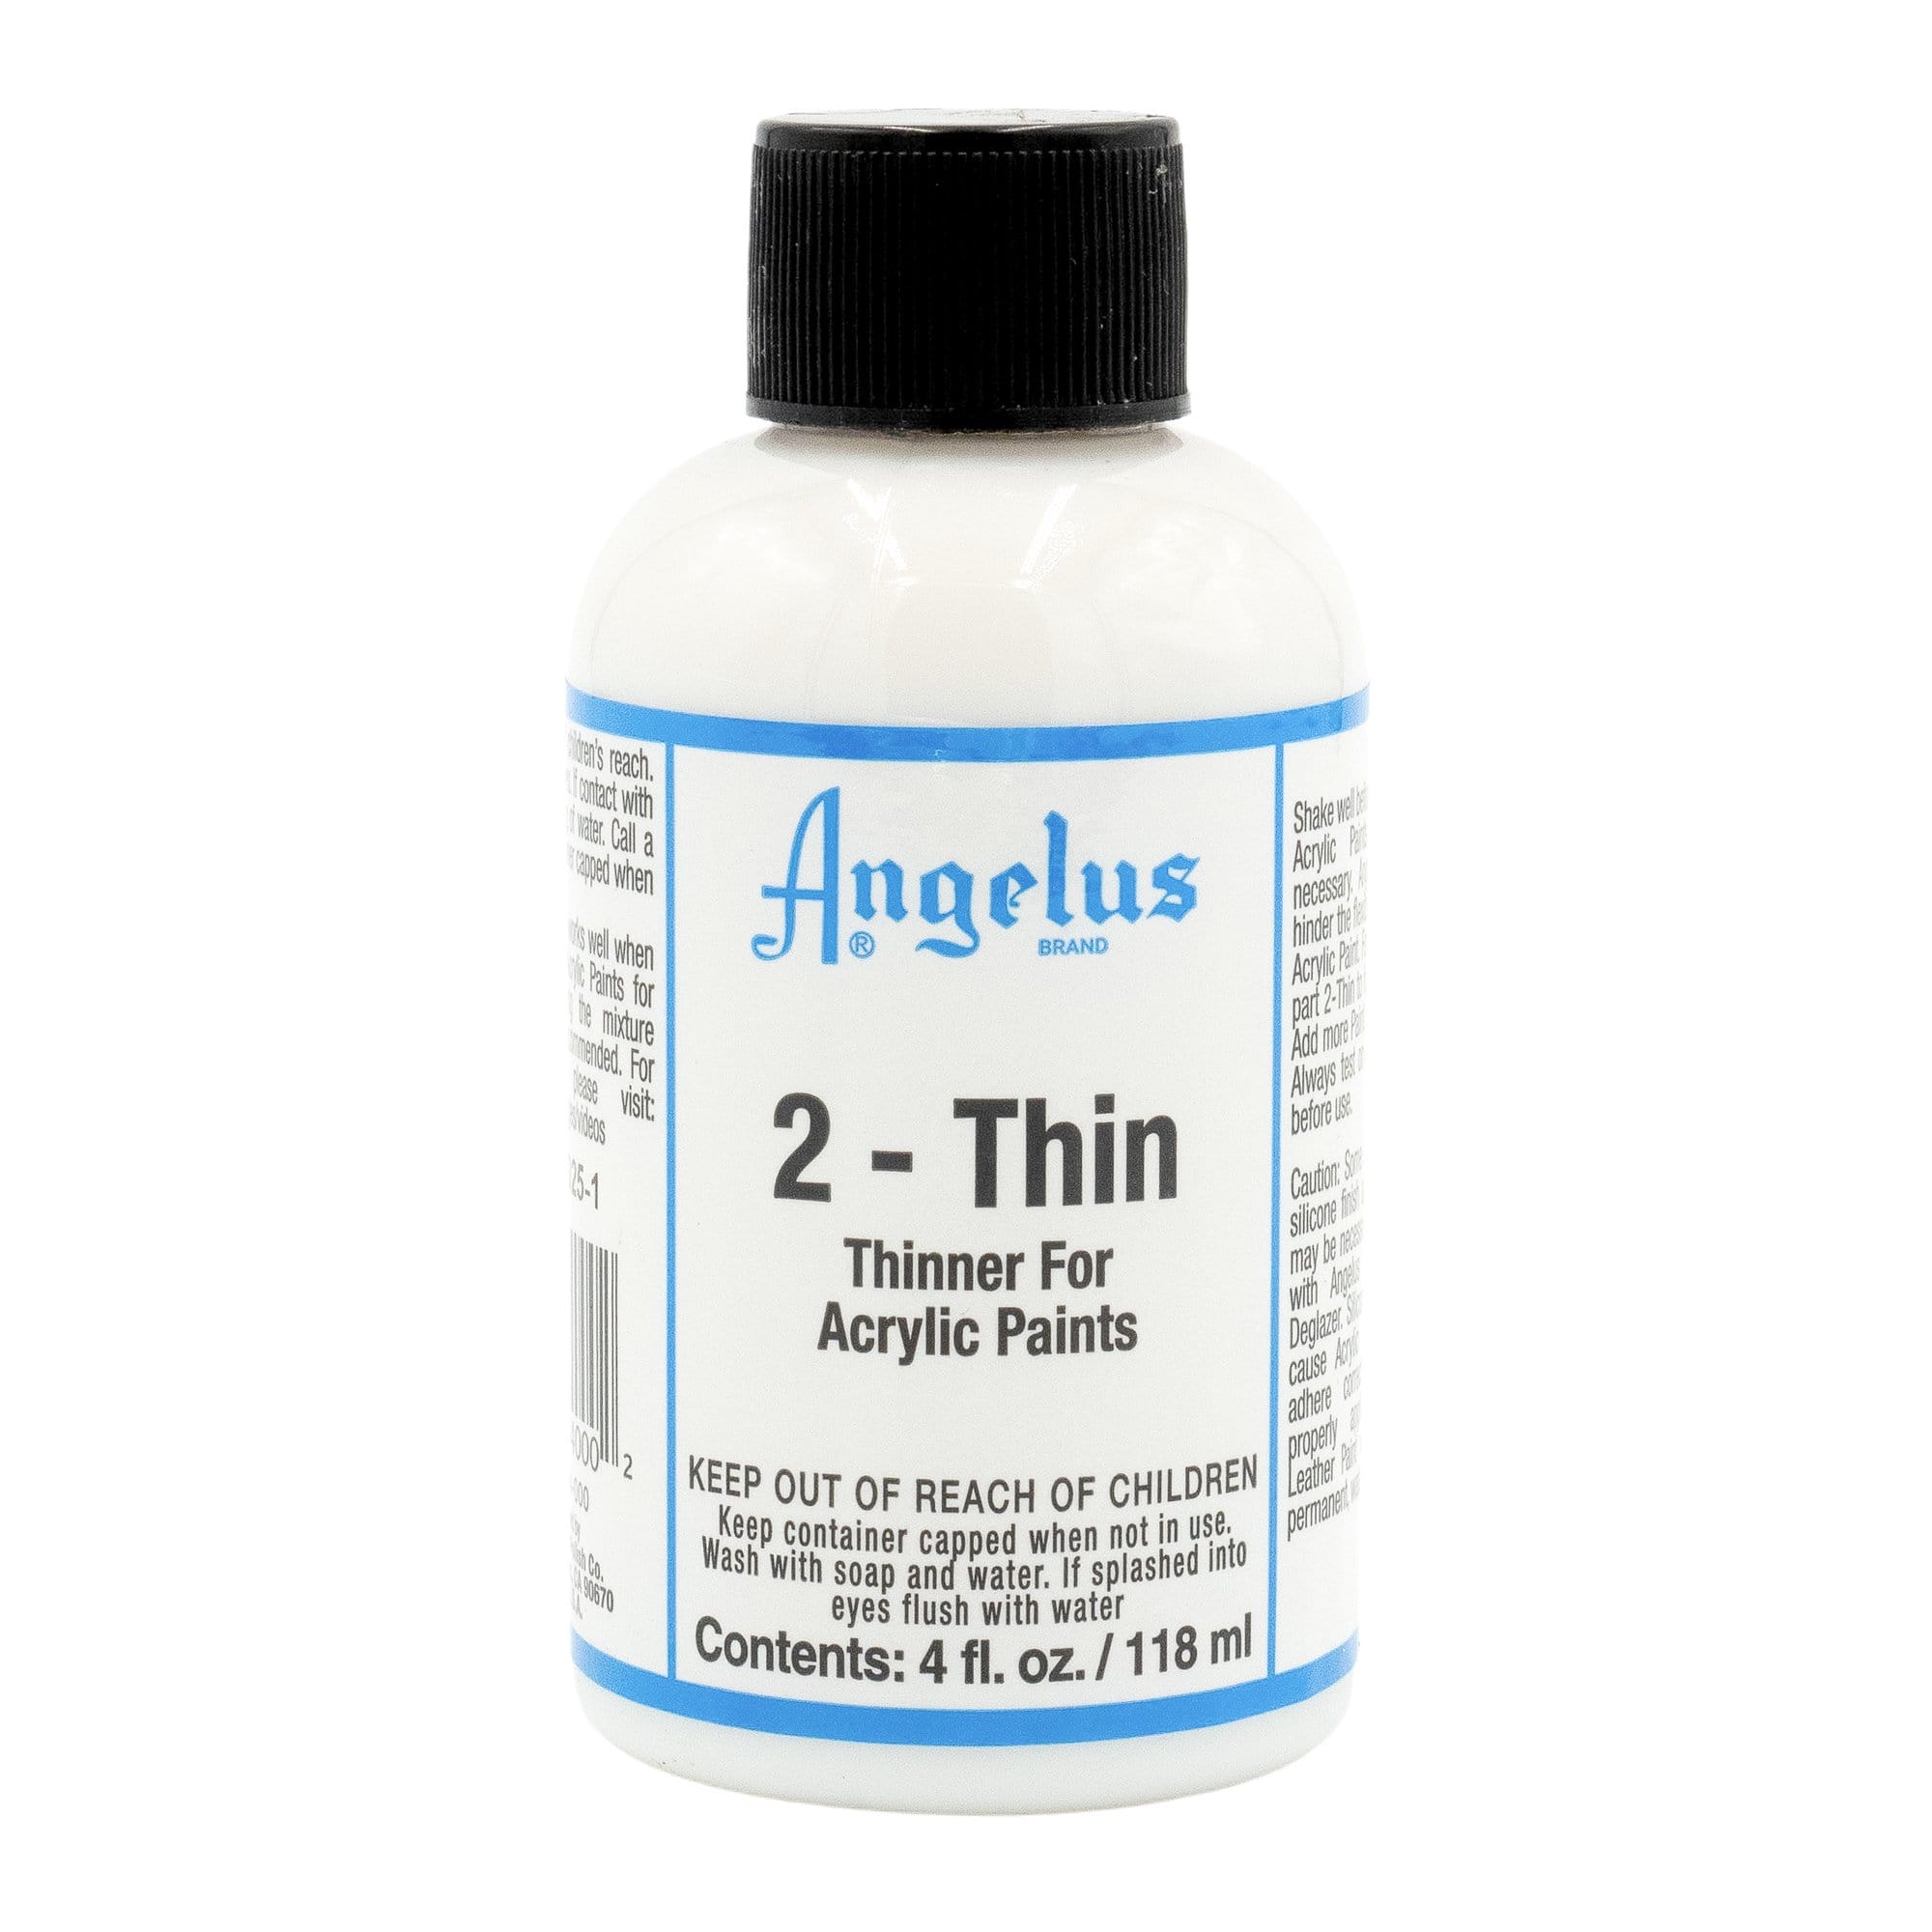 2 - Thin Paint Thinner - Angelus Direct